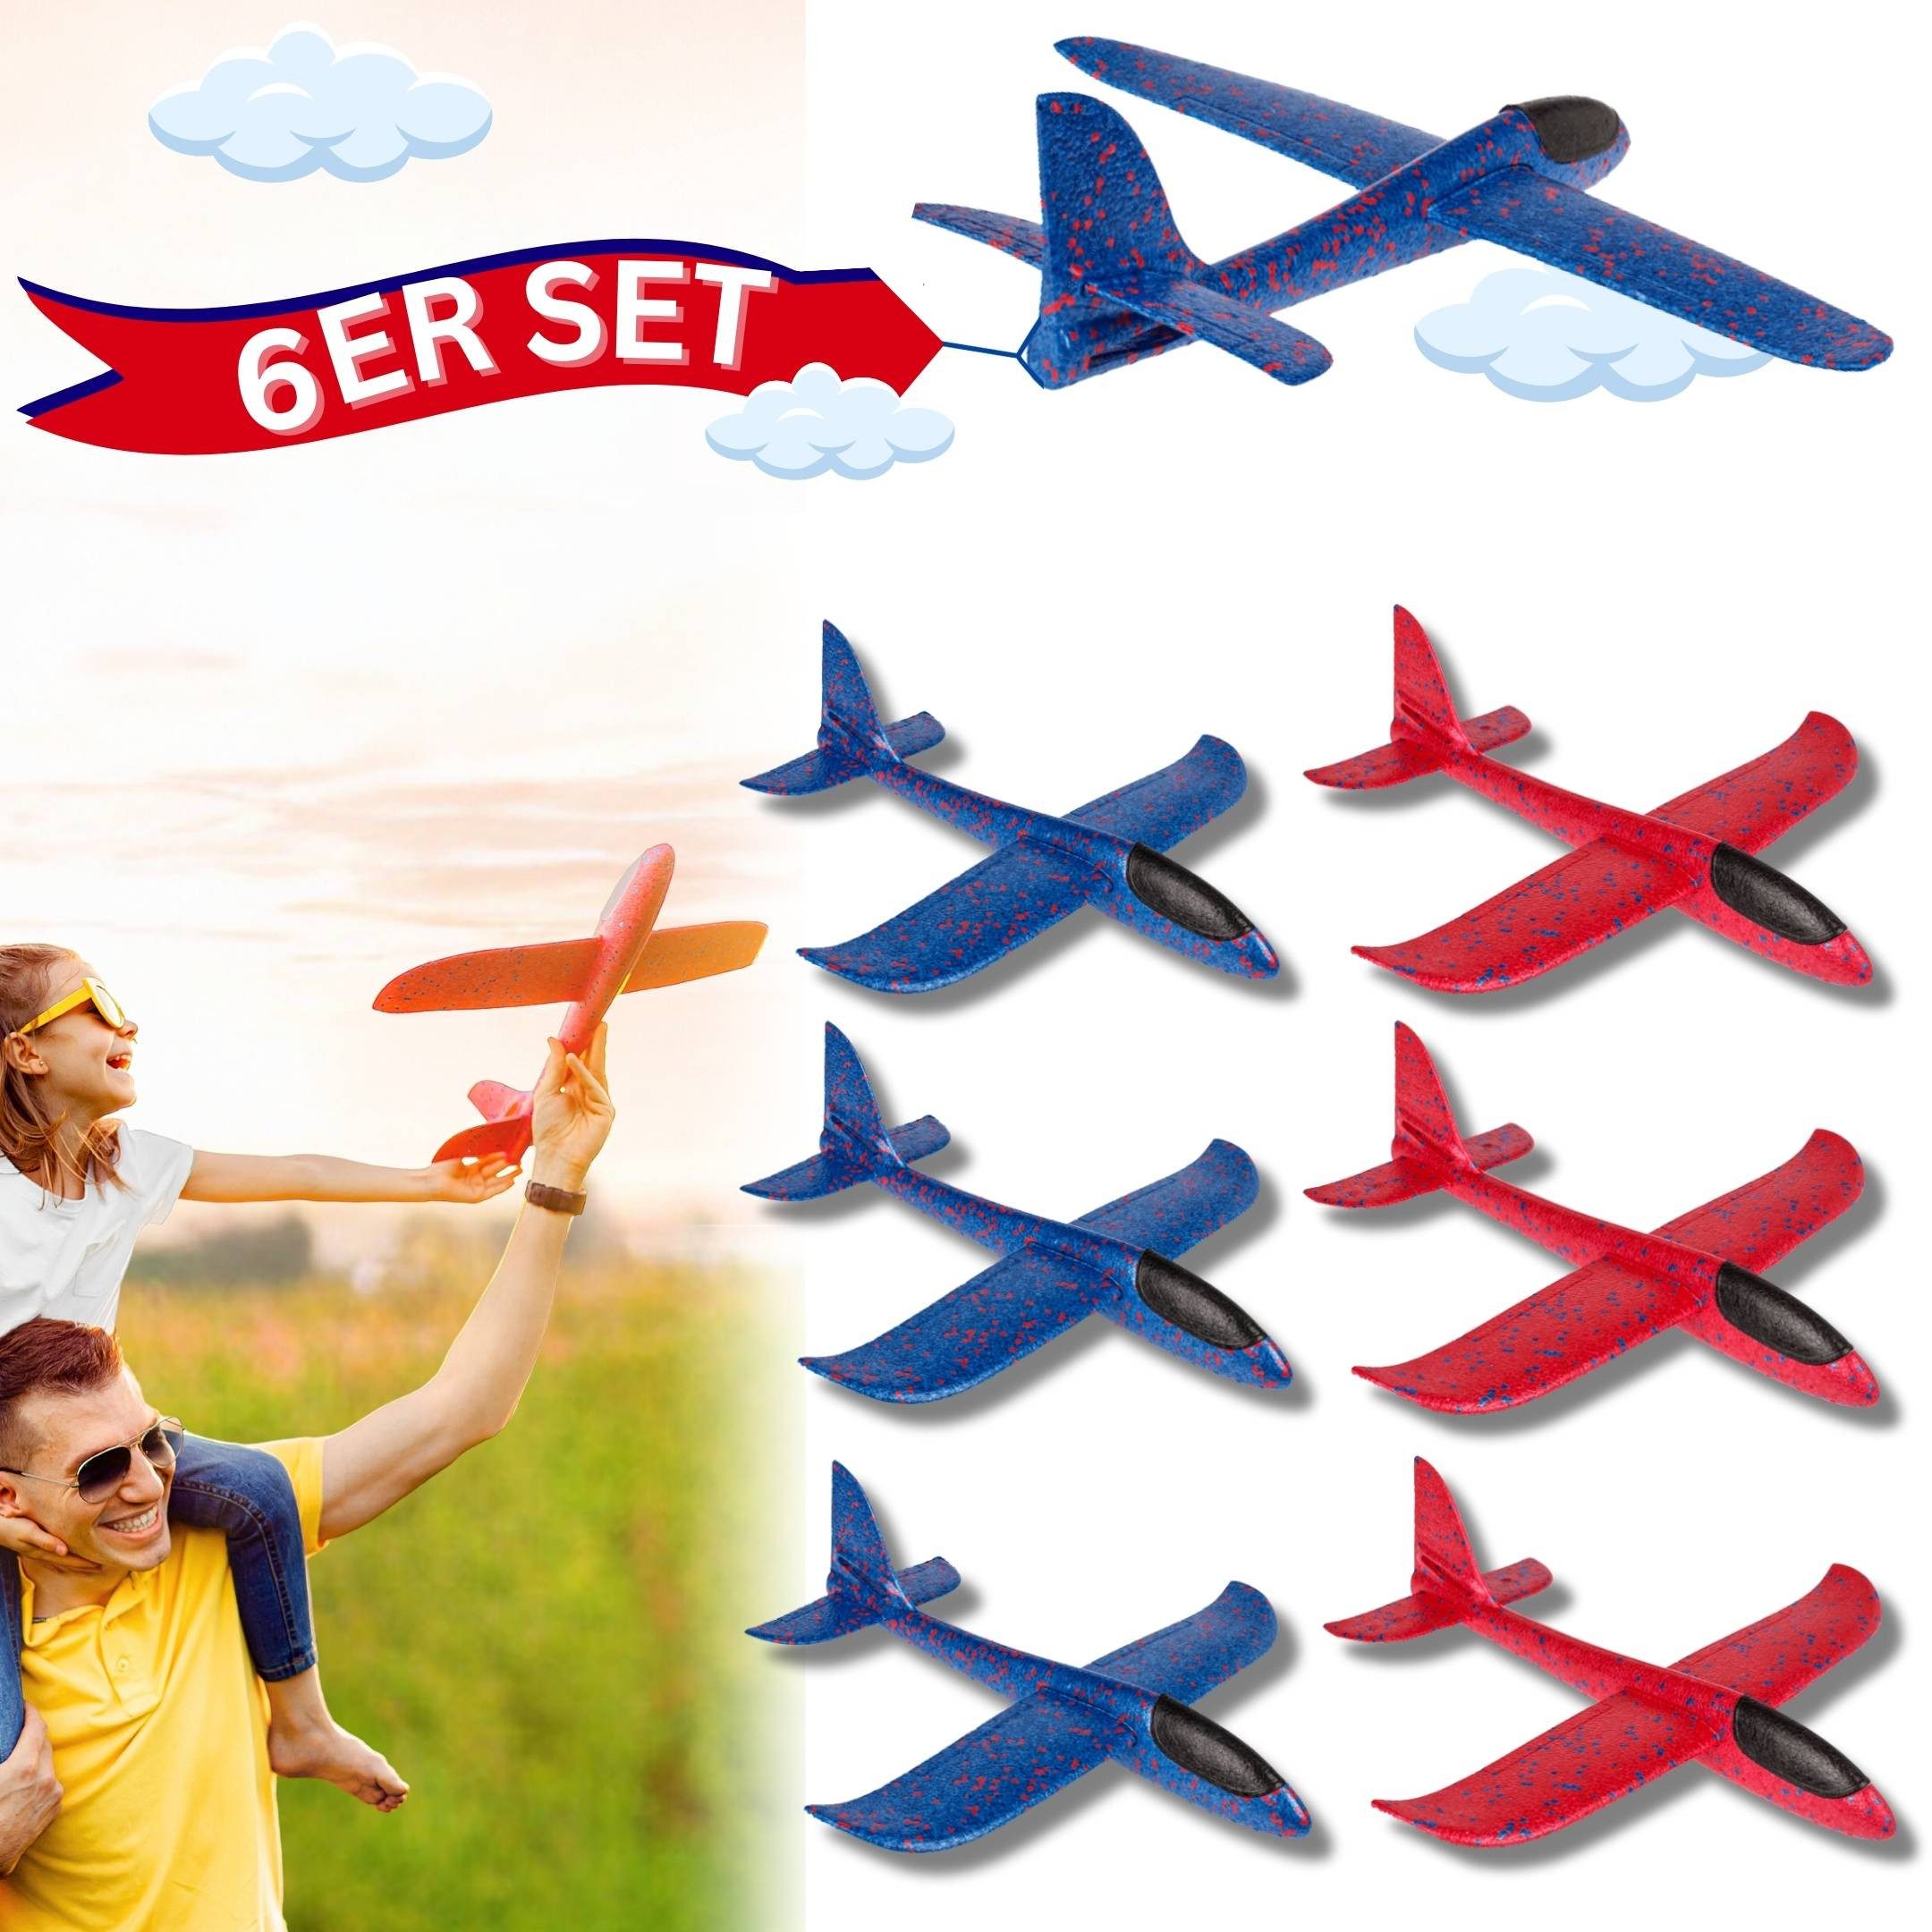 Bada Bing Spielzeug-Flugzeug XL Segelflieger Schaumstoff-Gleiter Flugzeug, (6er Set bestehend aus drei roten und 3 blauen Fliegern, 6-tlg., 48 cm große Wurfgleiter mit 49 cm Spannweite), Zwei verschiedene Flugoptionen